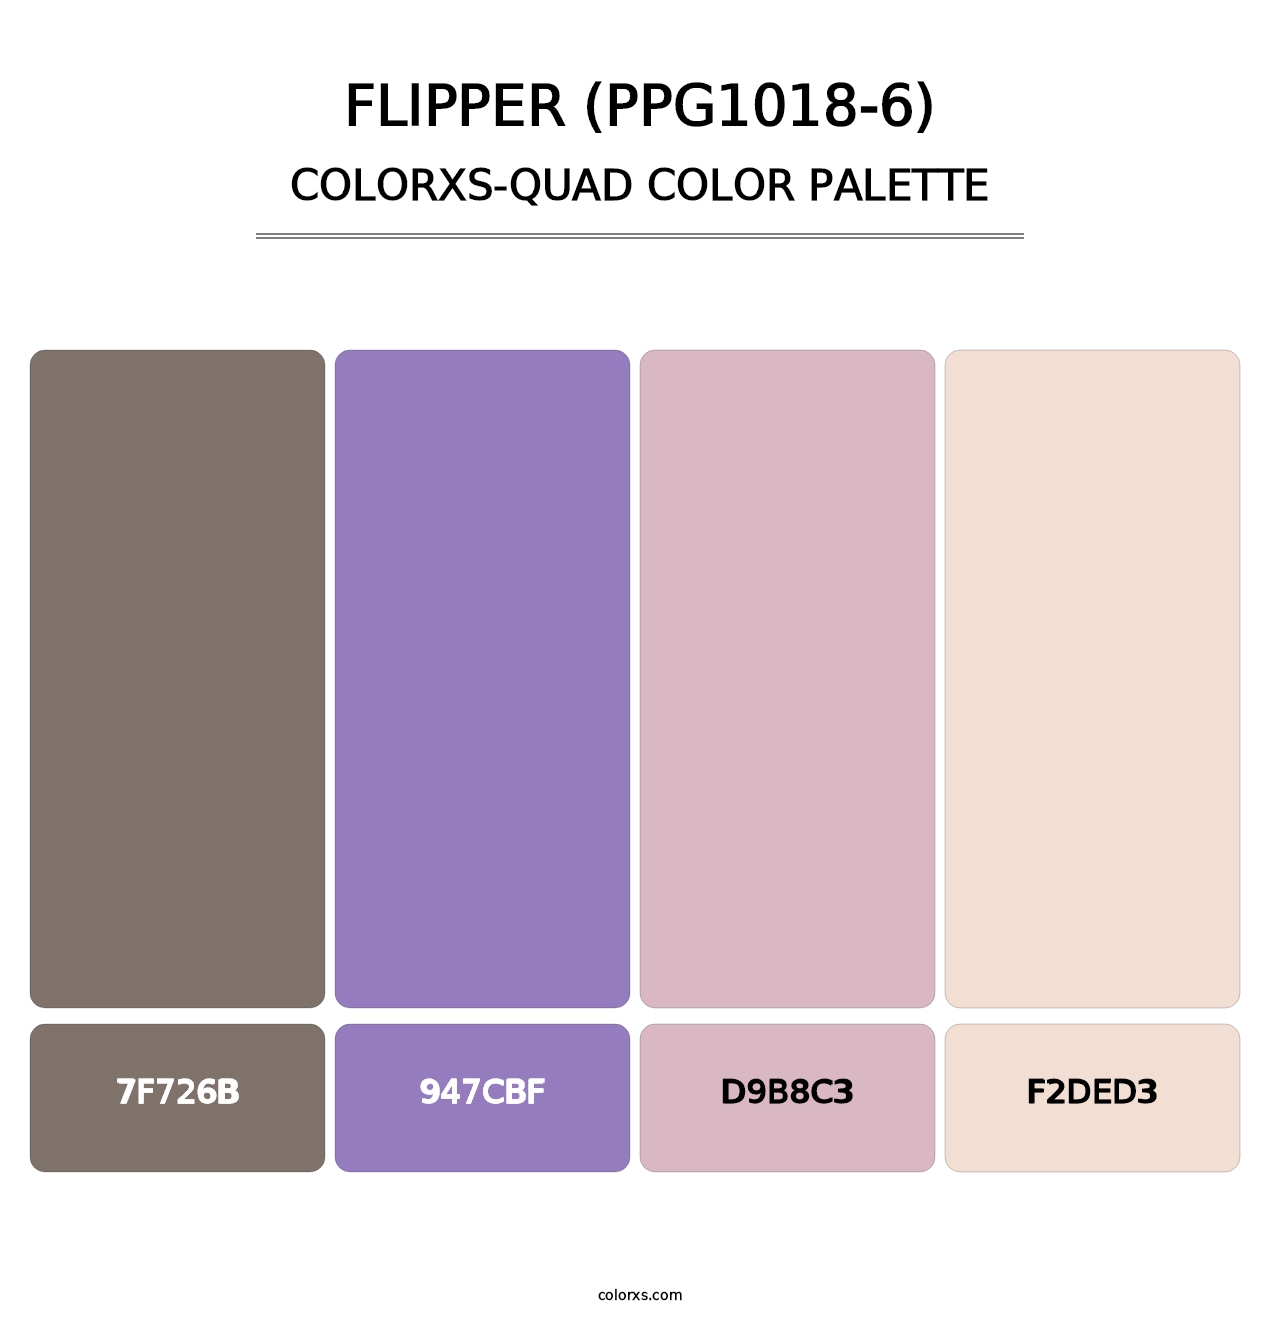 Flipper (PPG1018-6) - Colorxs Quad Palette